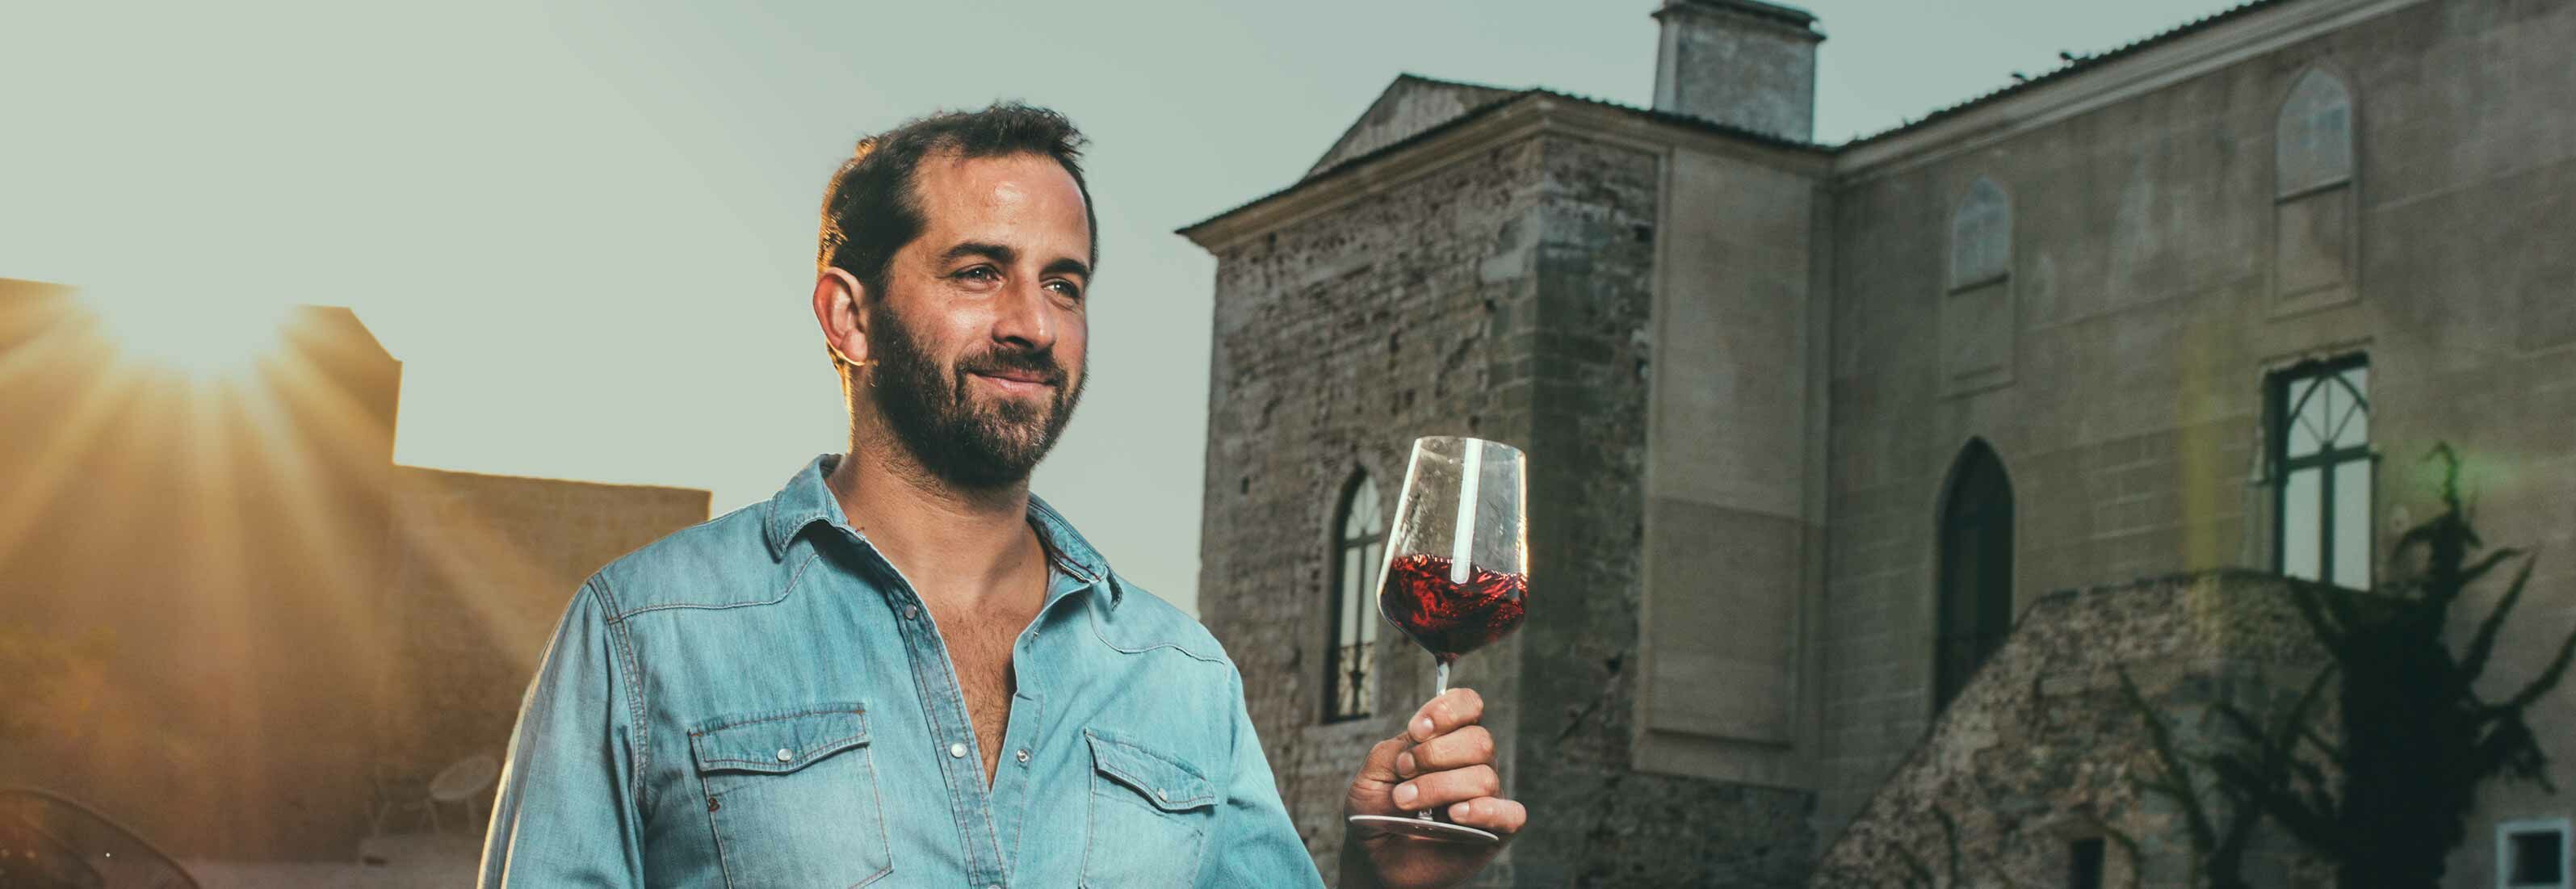 António Maçanita mit einem Glas Rotwein